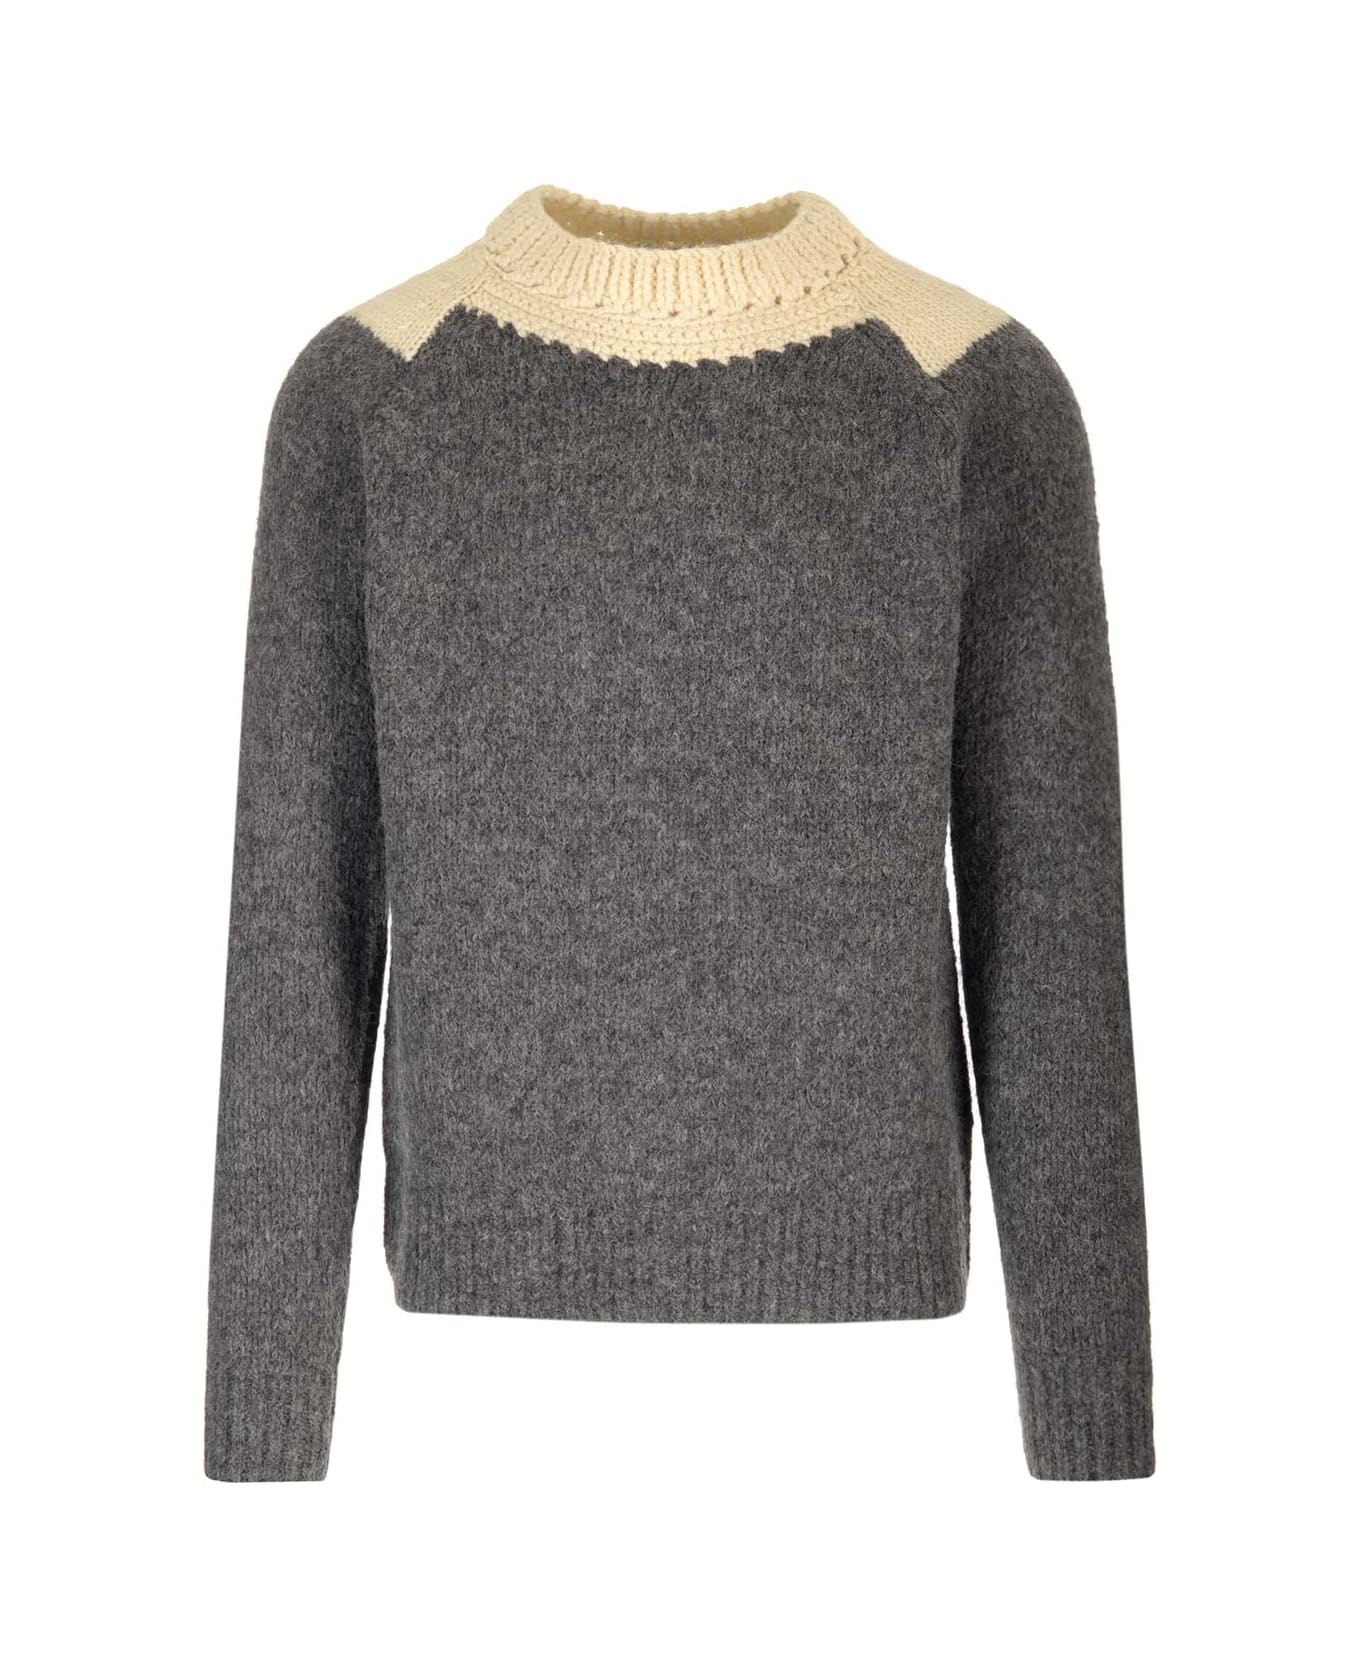 Dries Van Noten 'morgan' Crewneck Sweater - Grey ニットウェア